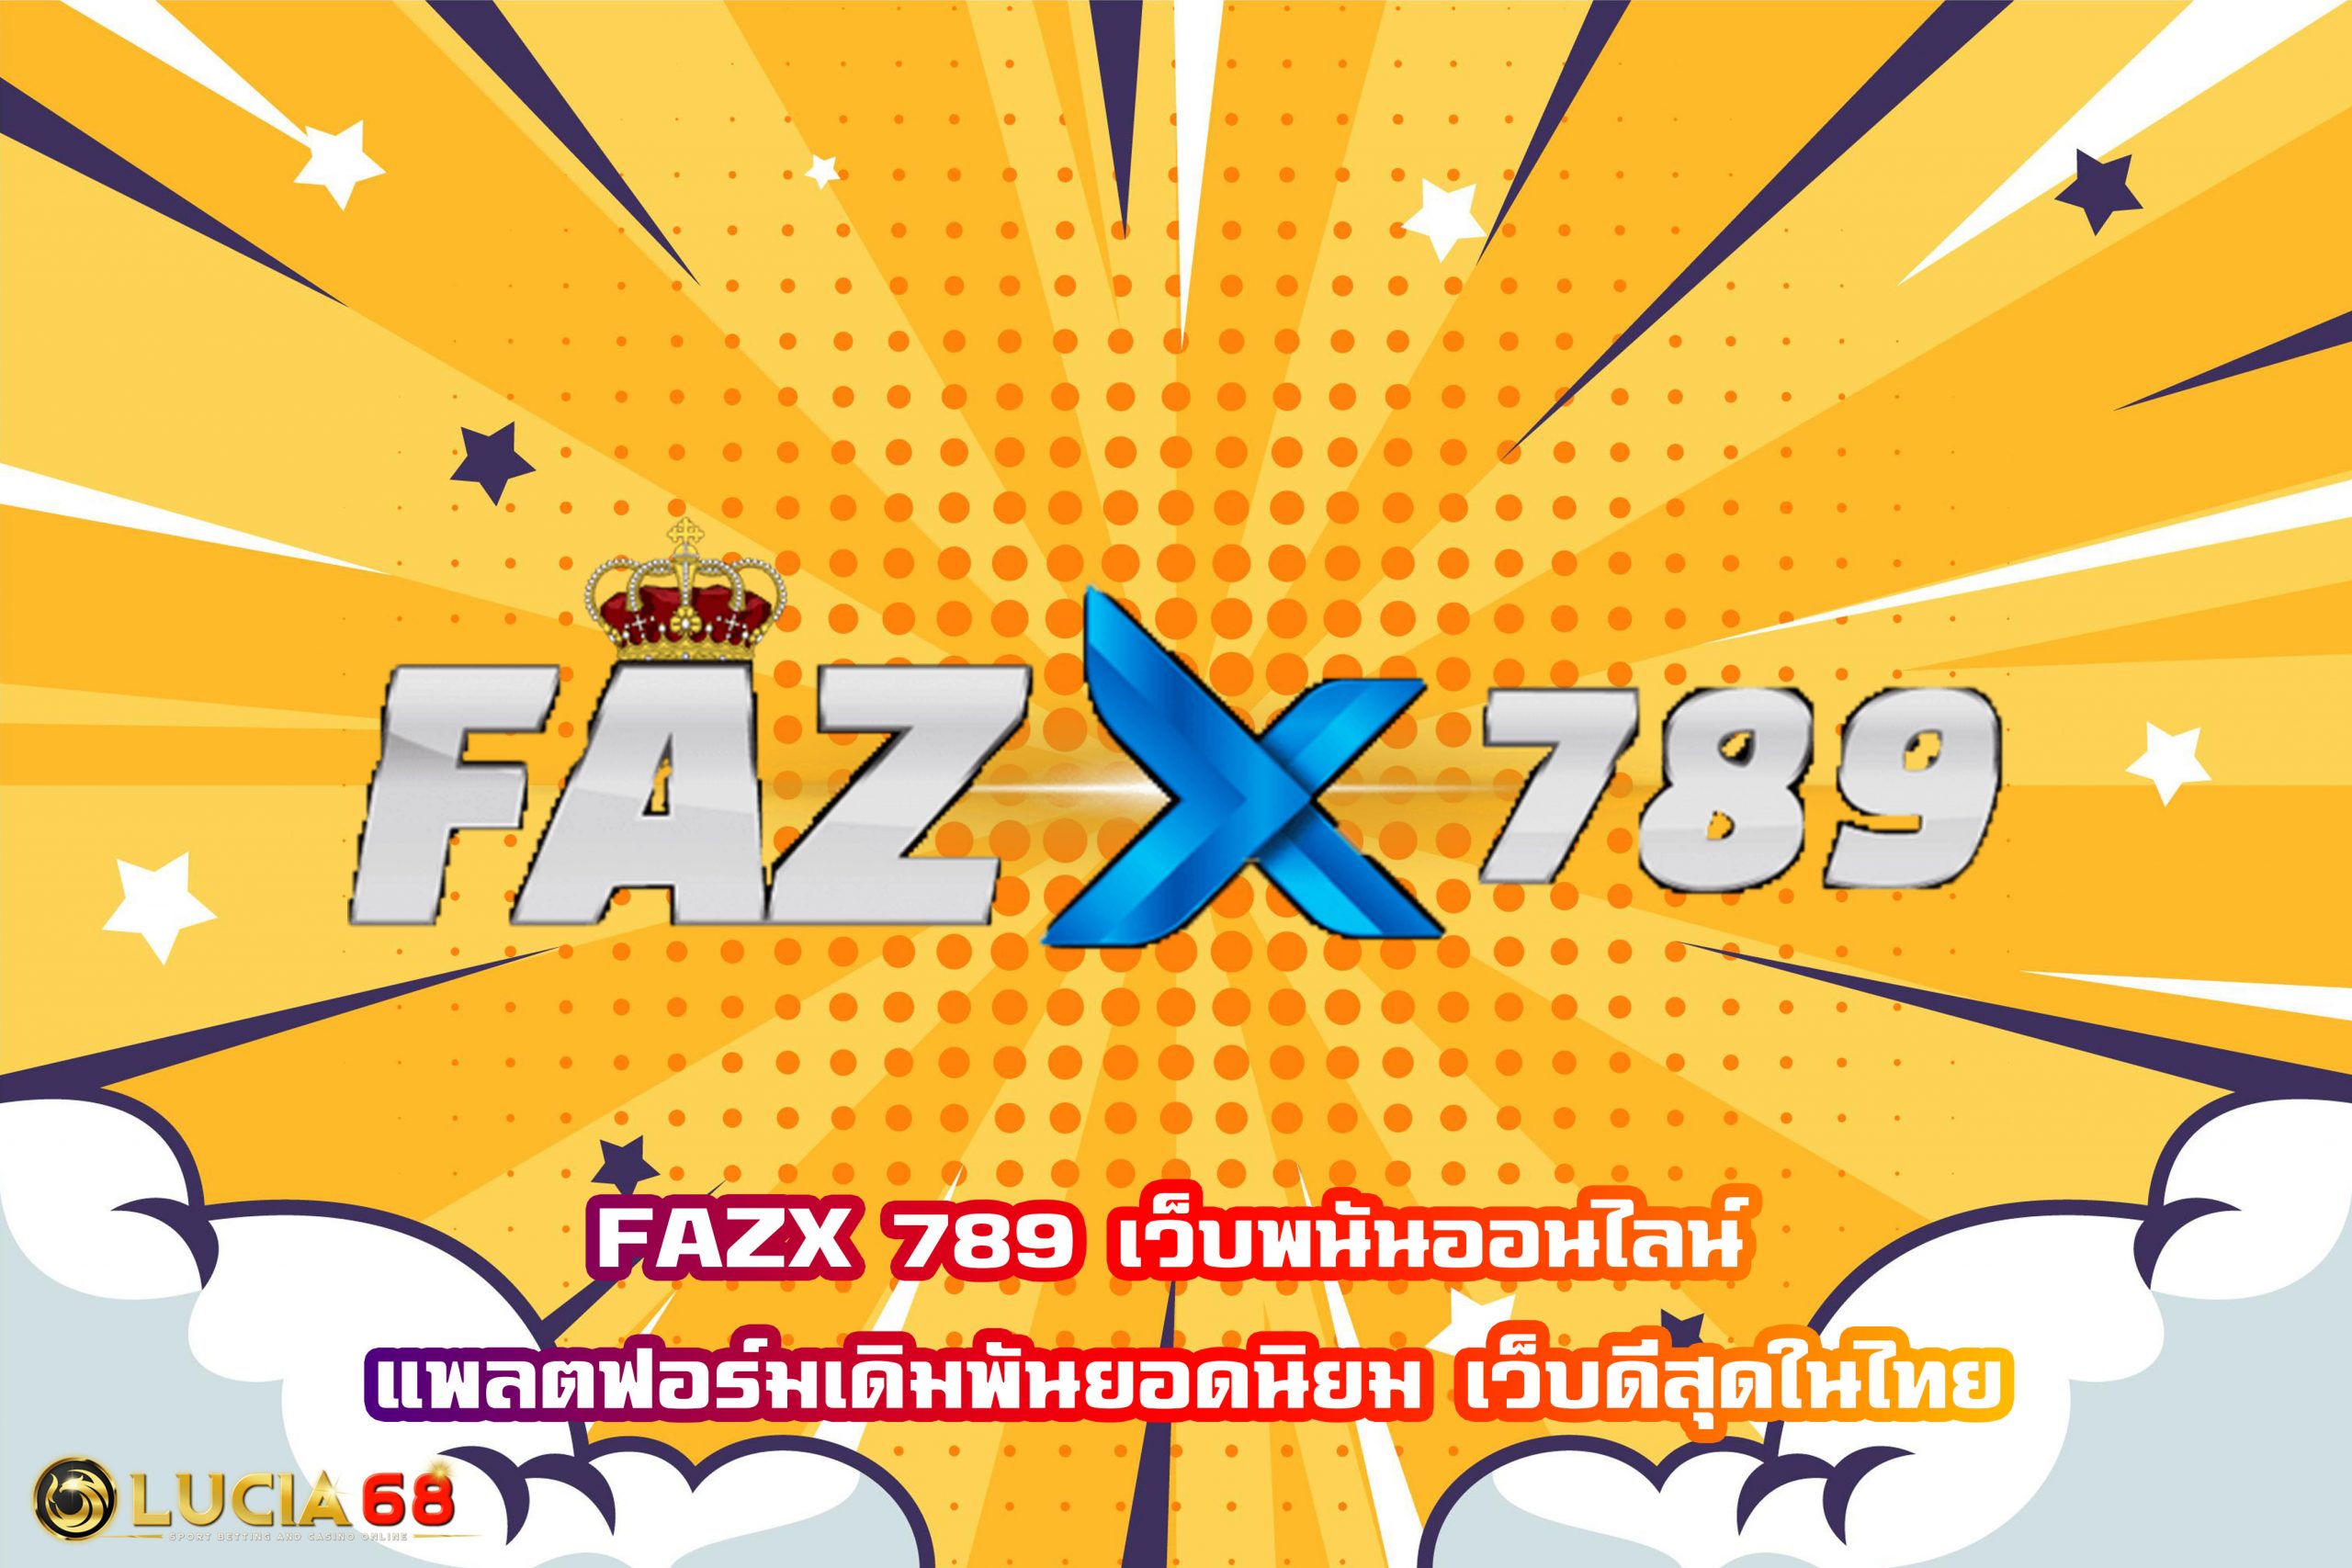 FAZX 789 เว็บพนันออนไลน์ แพลตฟอร์มเดิมพันยอดนิยม เว็บดีสุดในไทย